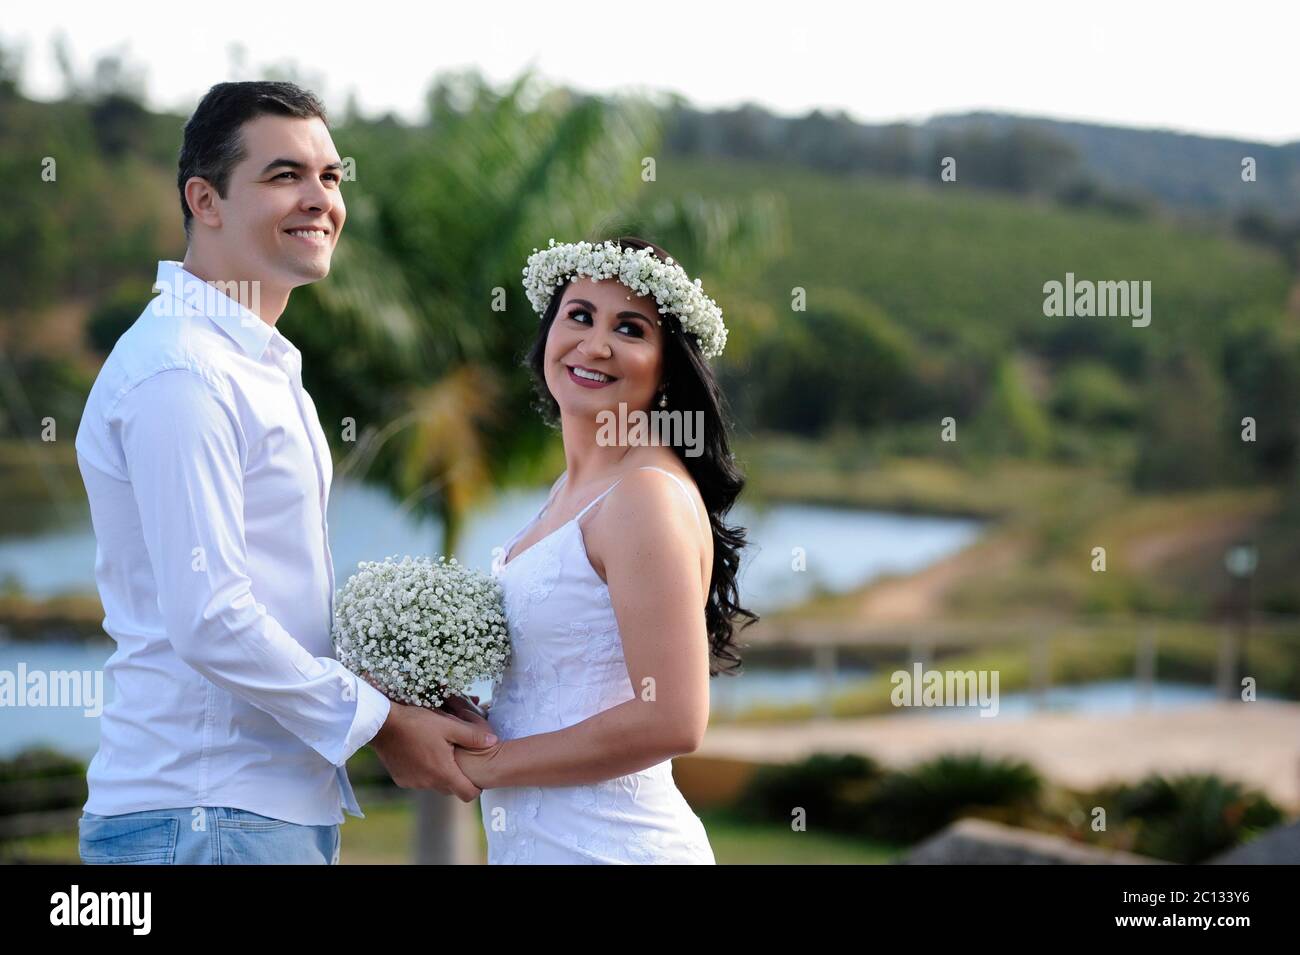 Portrait von schönen jungen Brautpaar posiert im Freien Fotoshooting mit weißen Kleidern und Blumen Stockfoto